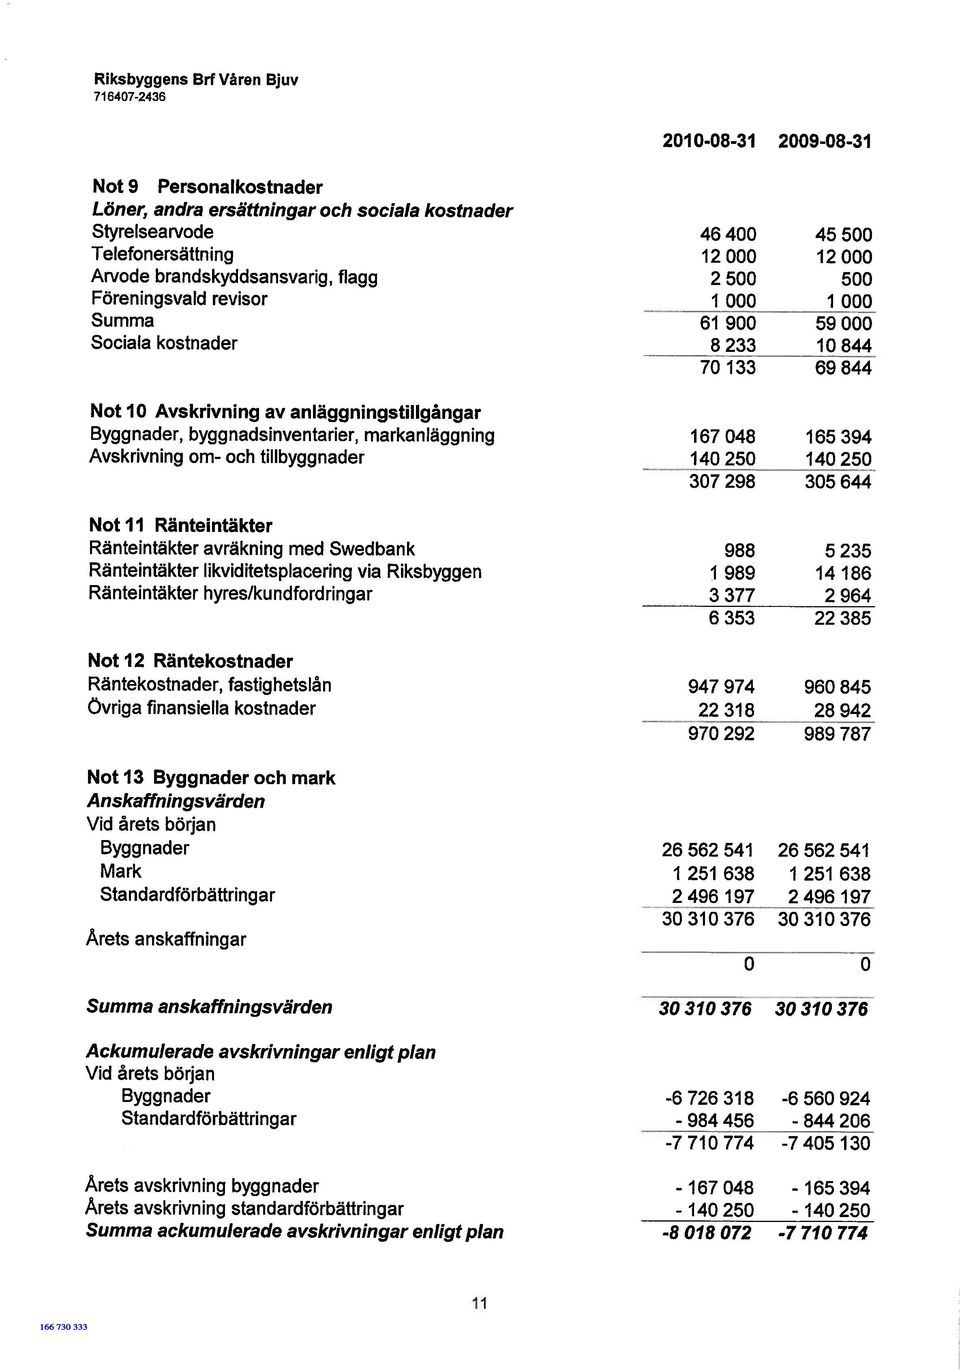 Swedbank Ränteintäkter likviditetspiacering via Riksbyggen Ränteintäkter hyres/ku ndfordringar Not 12 Räntekostnader Räntekostnader, fastighetslån Övriga finansiella kostnader Not 13 Byggnader och